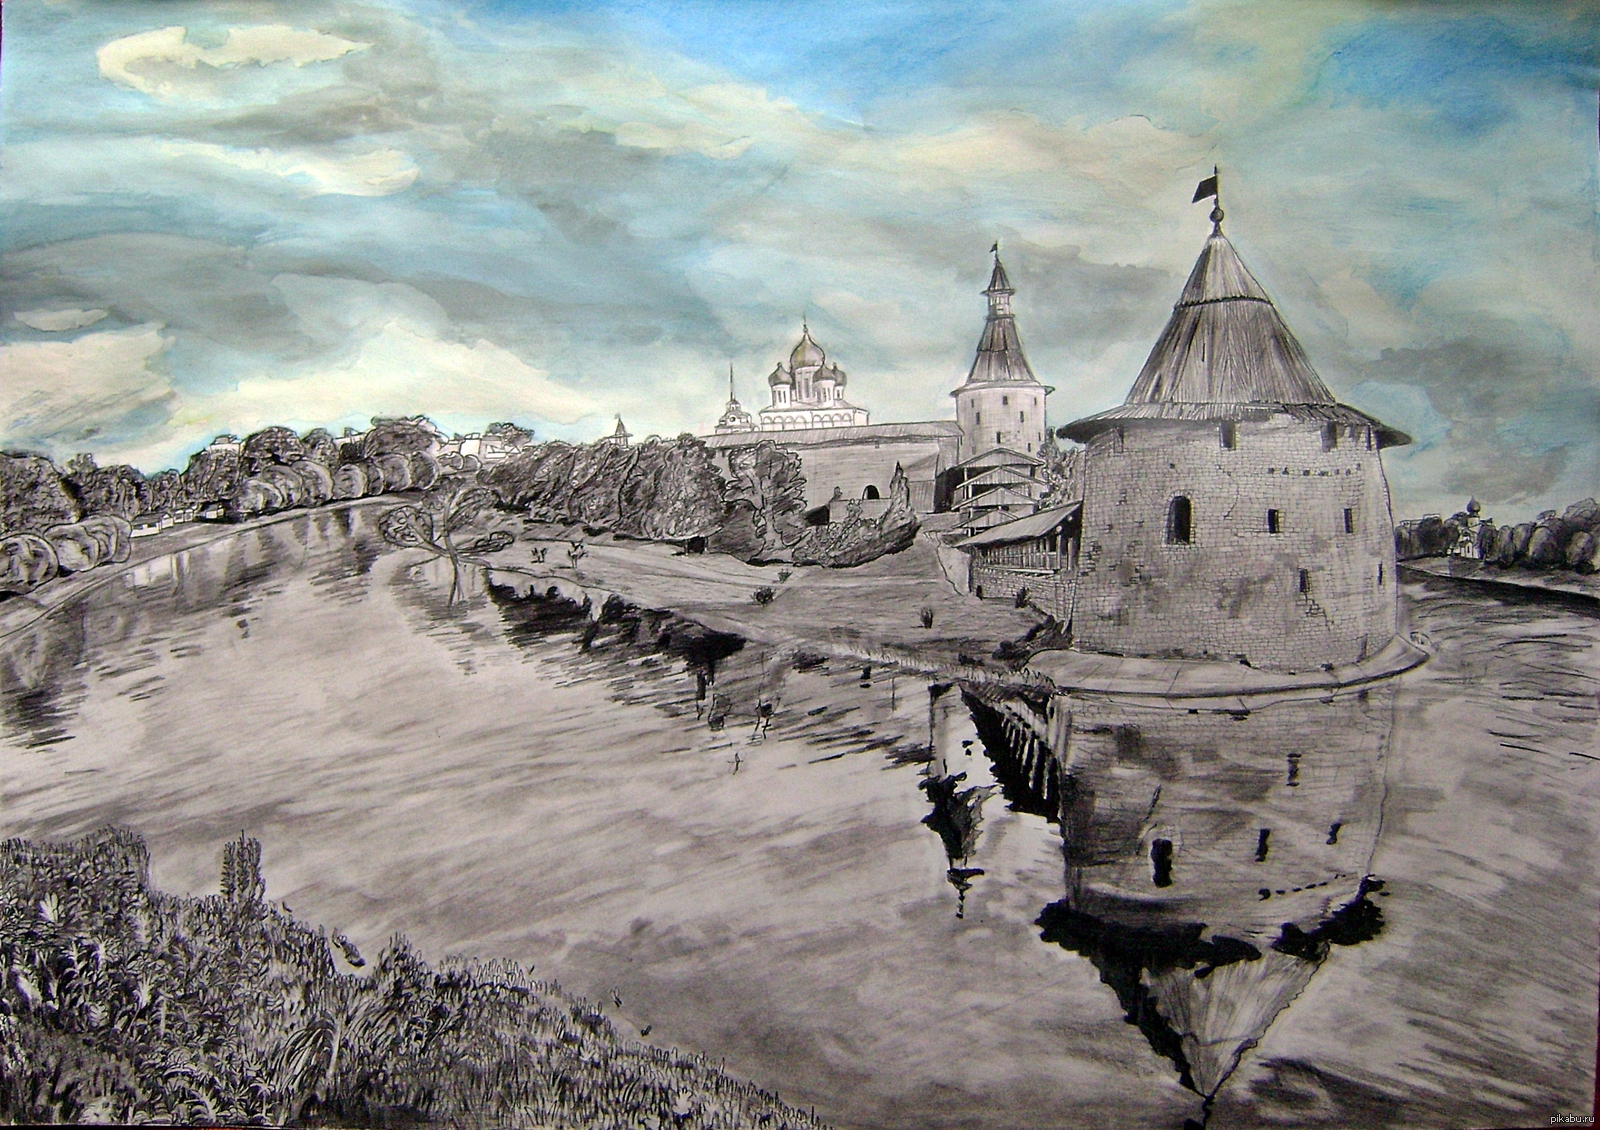 Кремль в древних русских городах